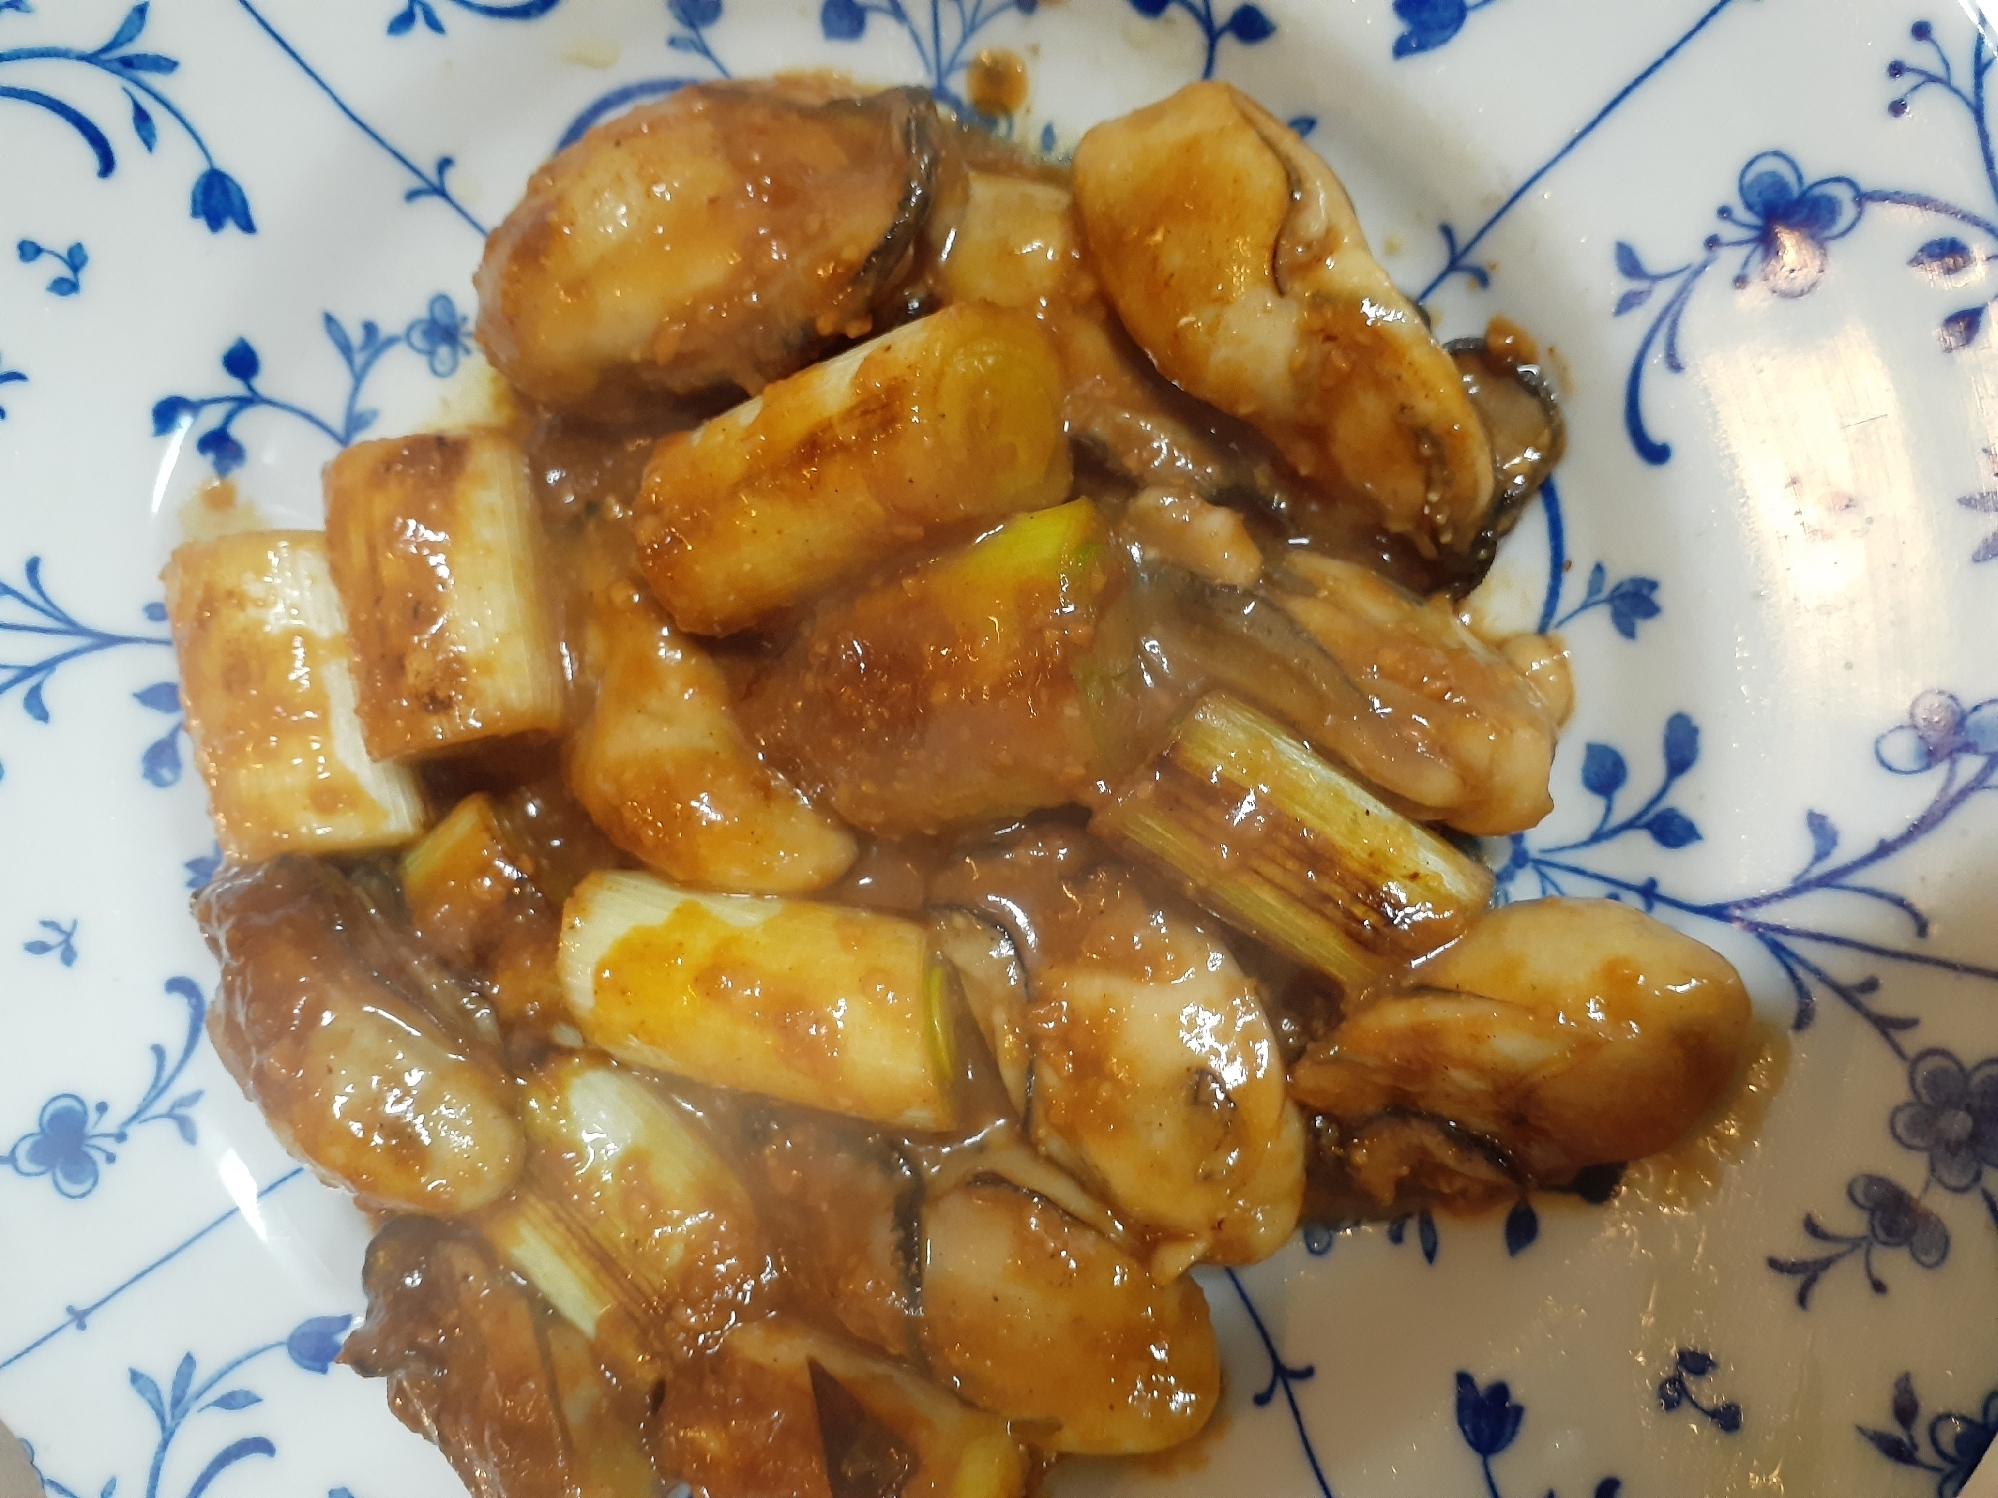 プリプリ牡蠣と焼きねぎの味噌焼き